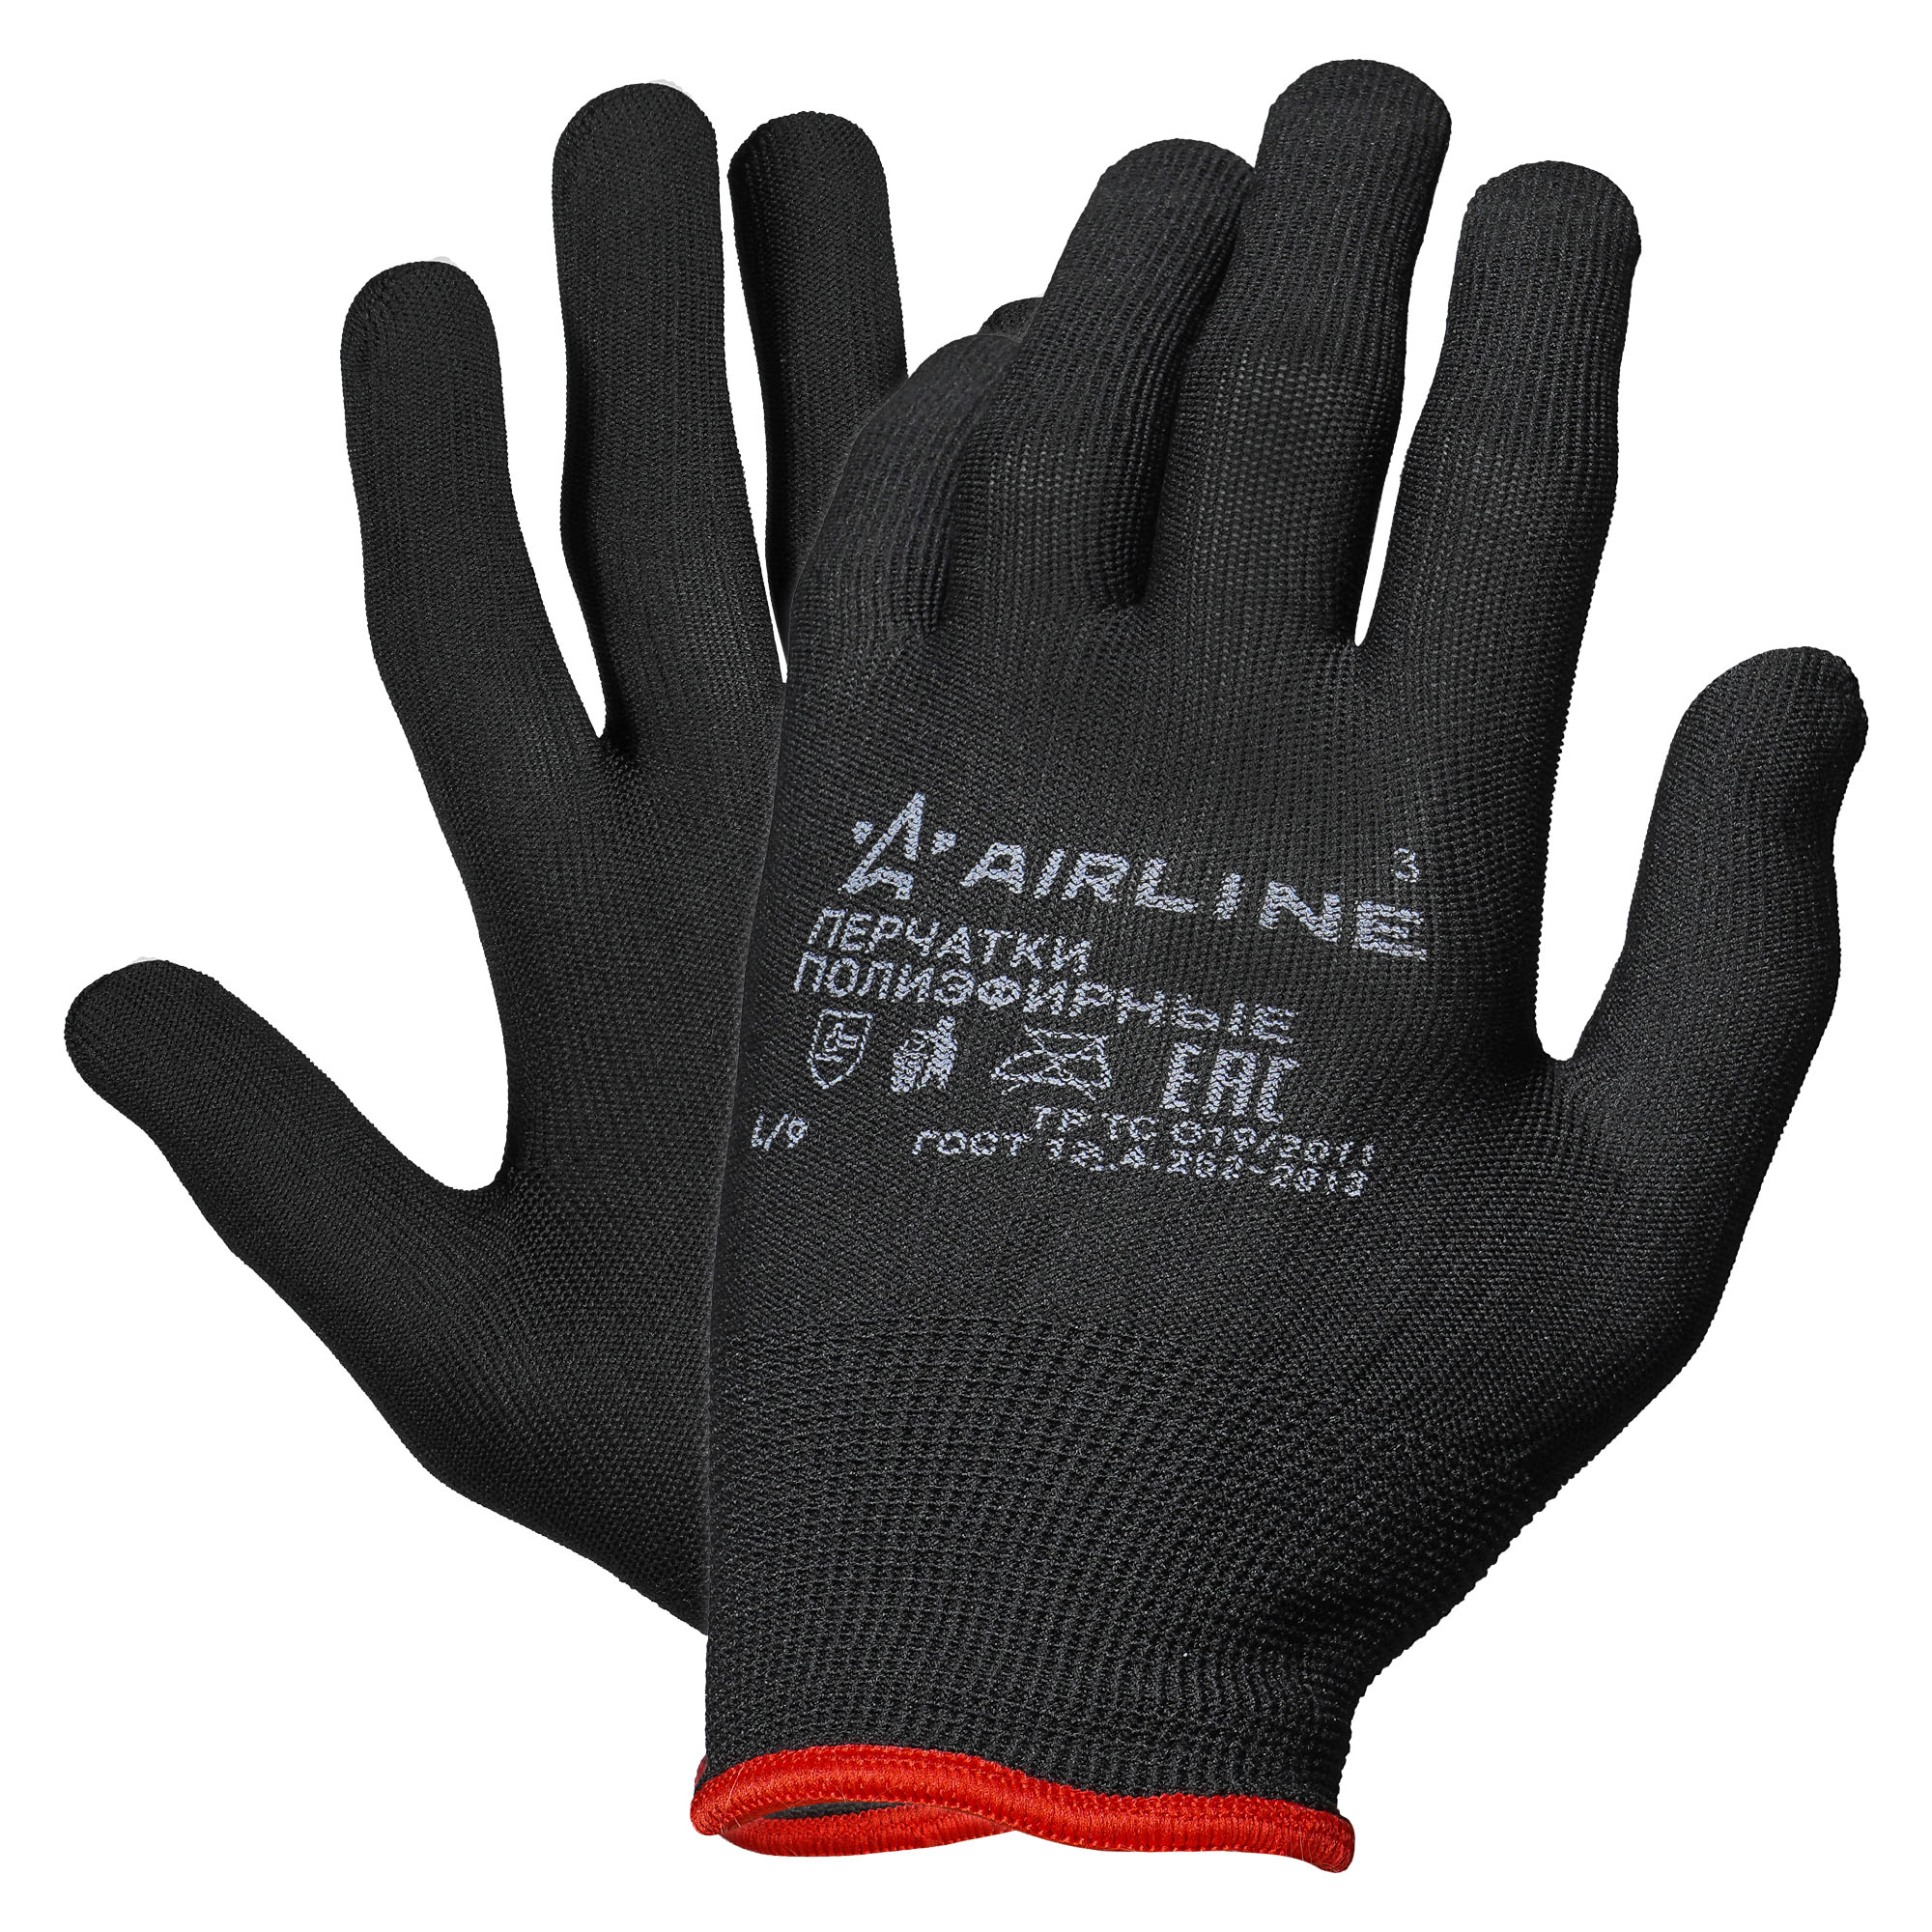 Перчатки Полиэфирные С Подвесом (L) Черные (Adwg006) Airline Adwg006 AIRLINE арт. ADWG006 пемза для педикюра с подвесом 9 × 4 см разно ная